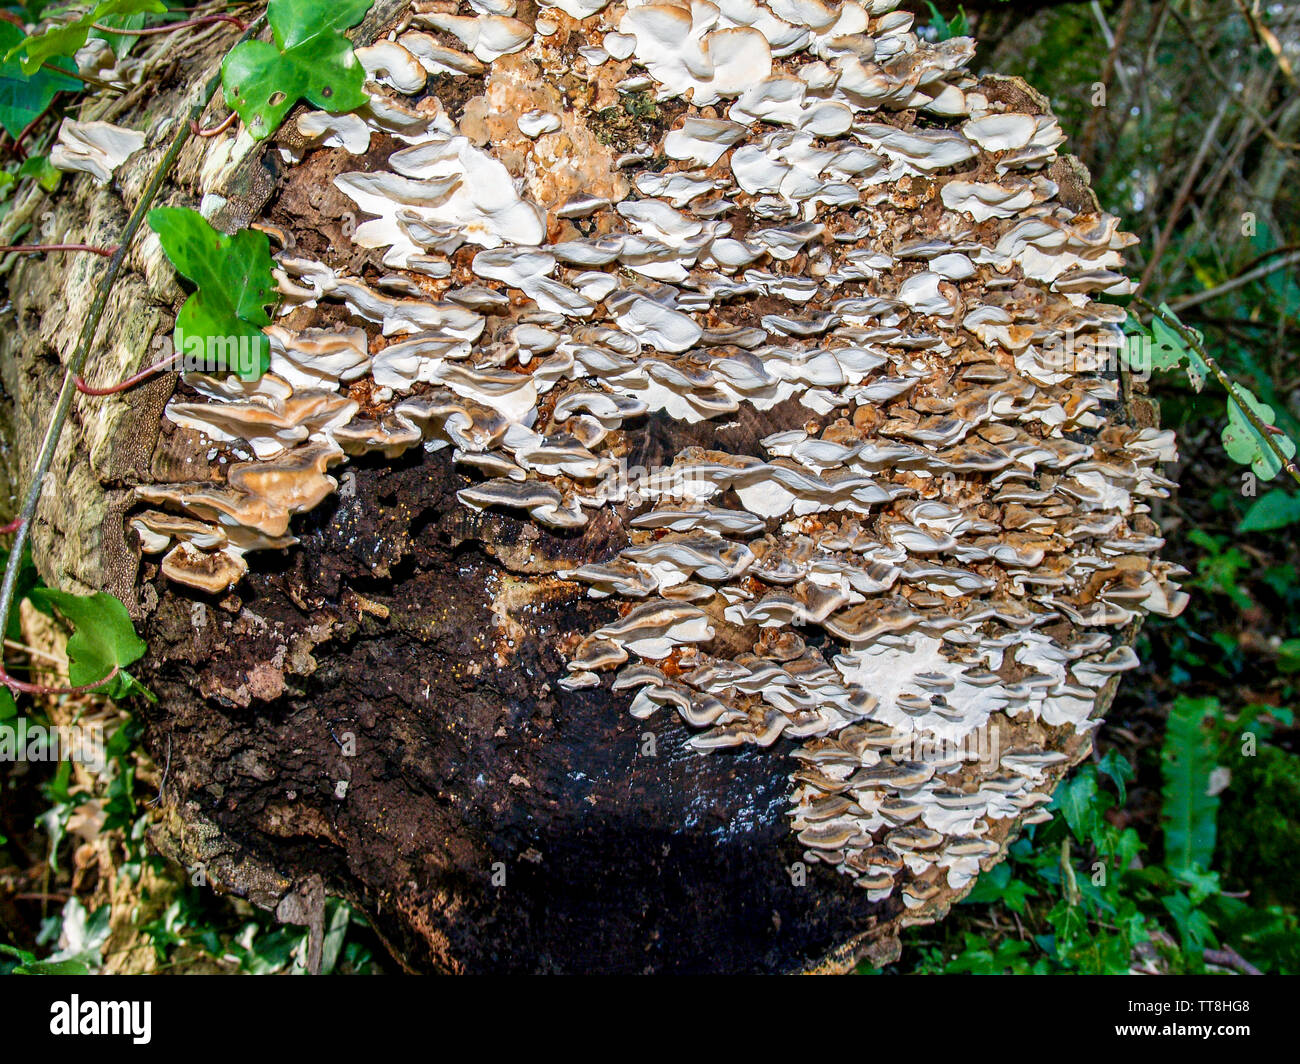 Champignon poussant sur un arbre mort et pourriture en décomposition qui a été coupé et abattus dans le bois, Oxwich Oxwich Bay, Gower, Pays de Galles, Royaume-Uni. Banque D'Images